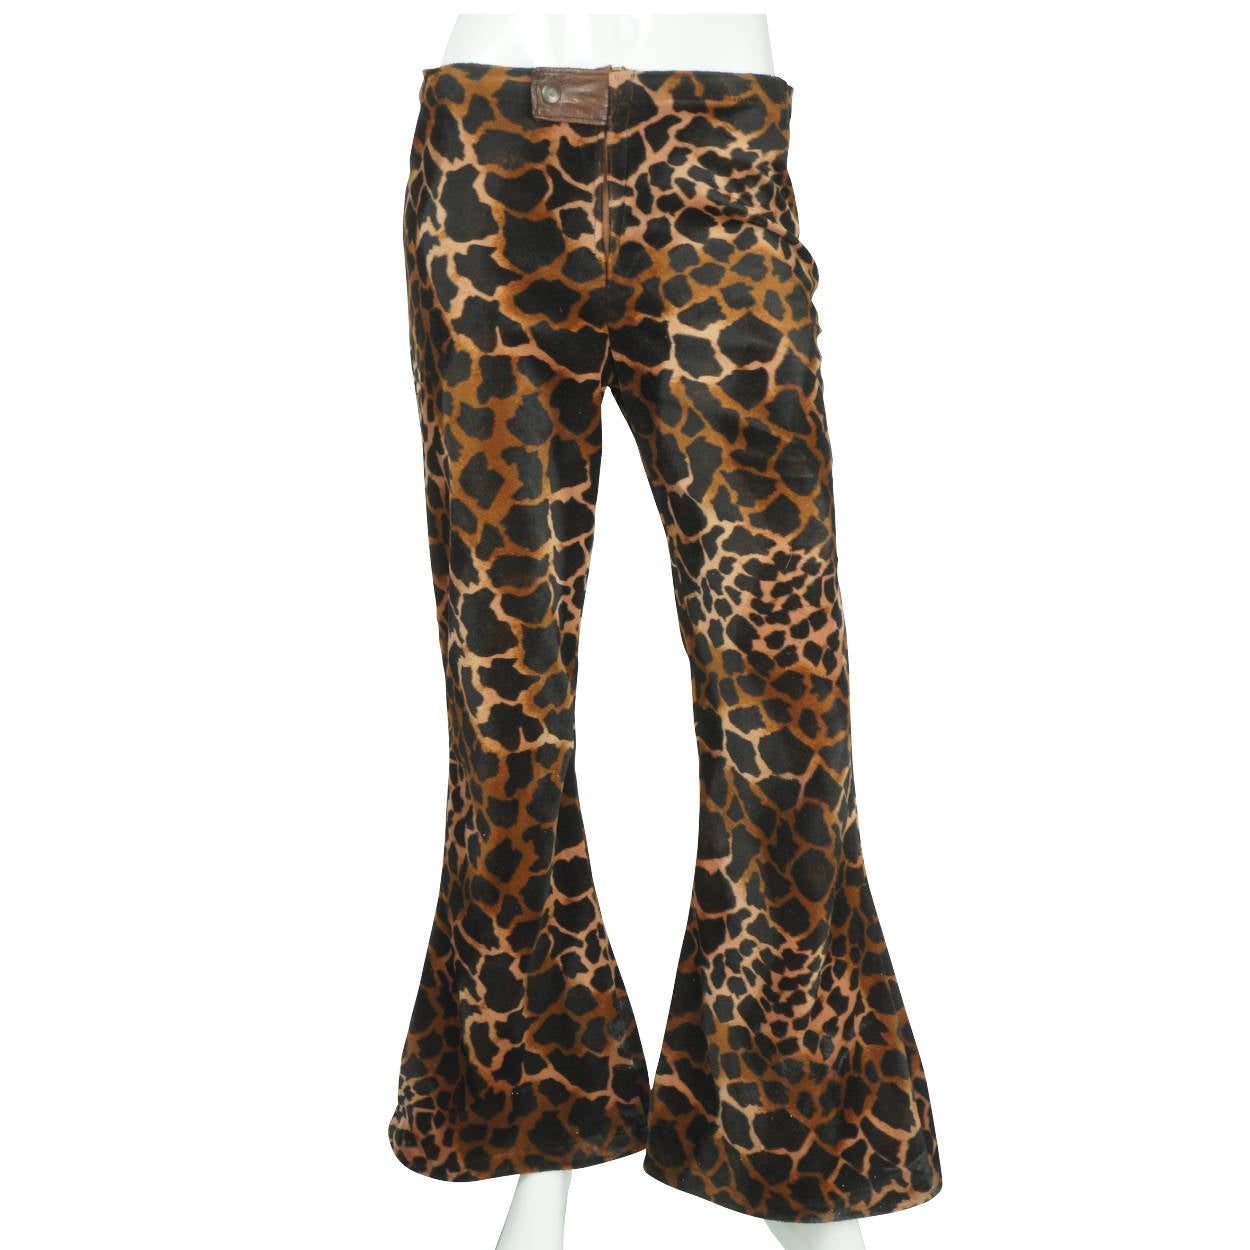 https://www.poppysvintageclothing.com/cdn/shop/products/1960s-Leopard-Print-Velvet-Pants.jpg?v=1594447214